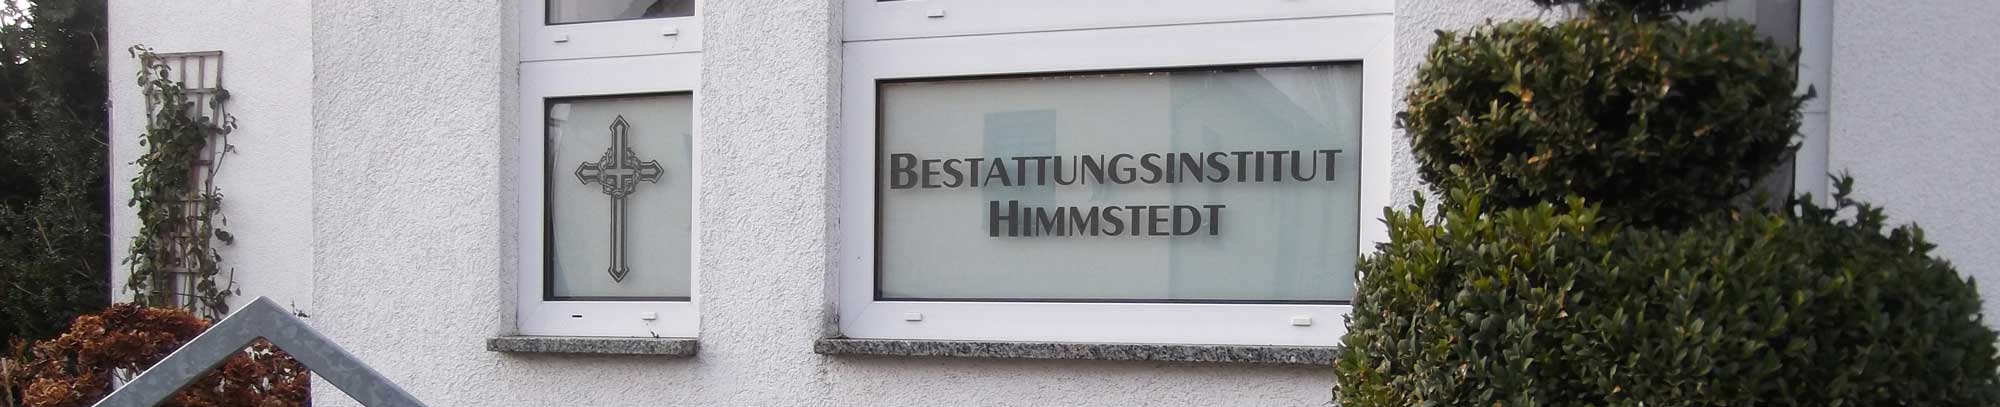 Bestattungsinstitut Himmstedt, Bestattungen, Bestattung, Verabschiedung, Trauerfall, Trauerraum, Urne, Sarg